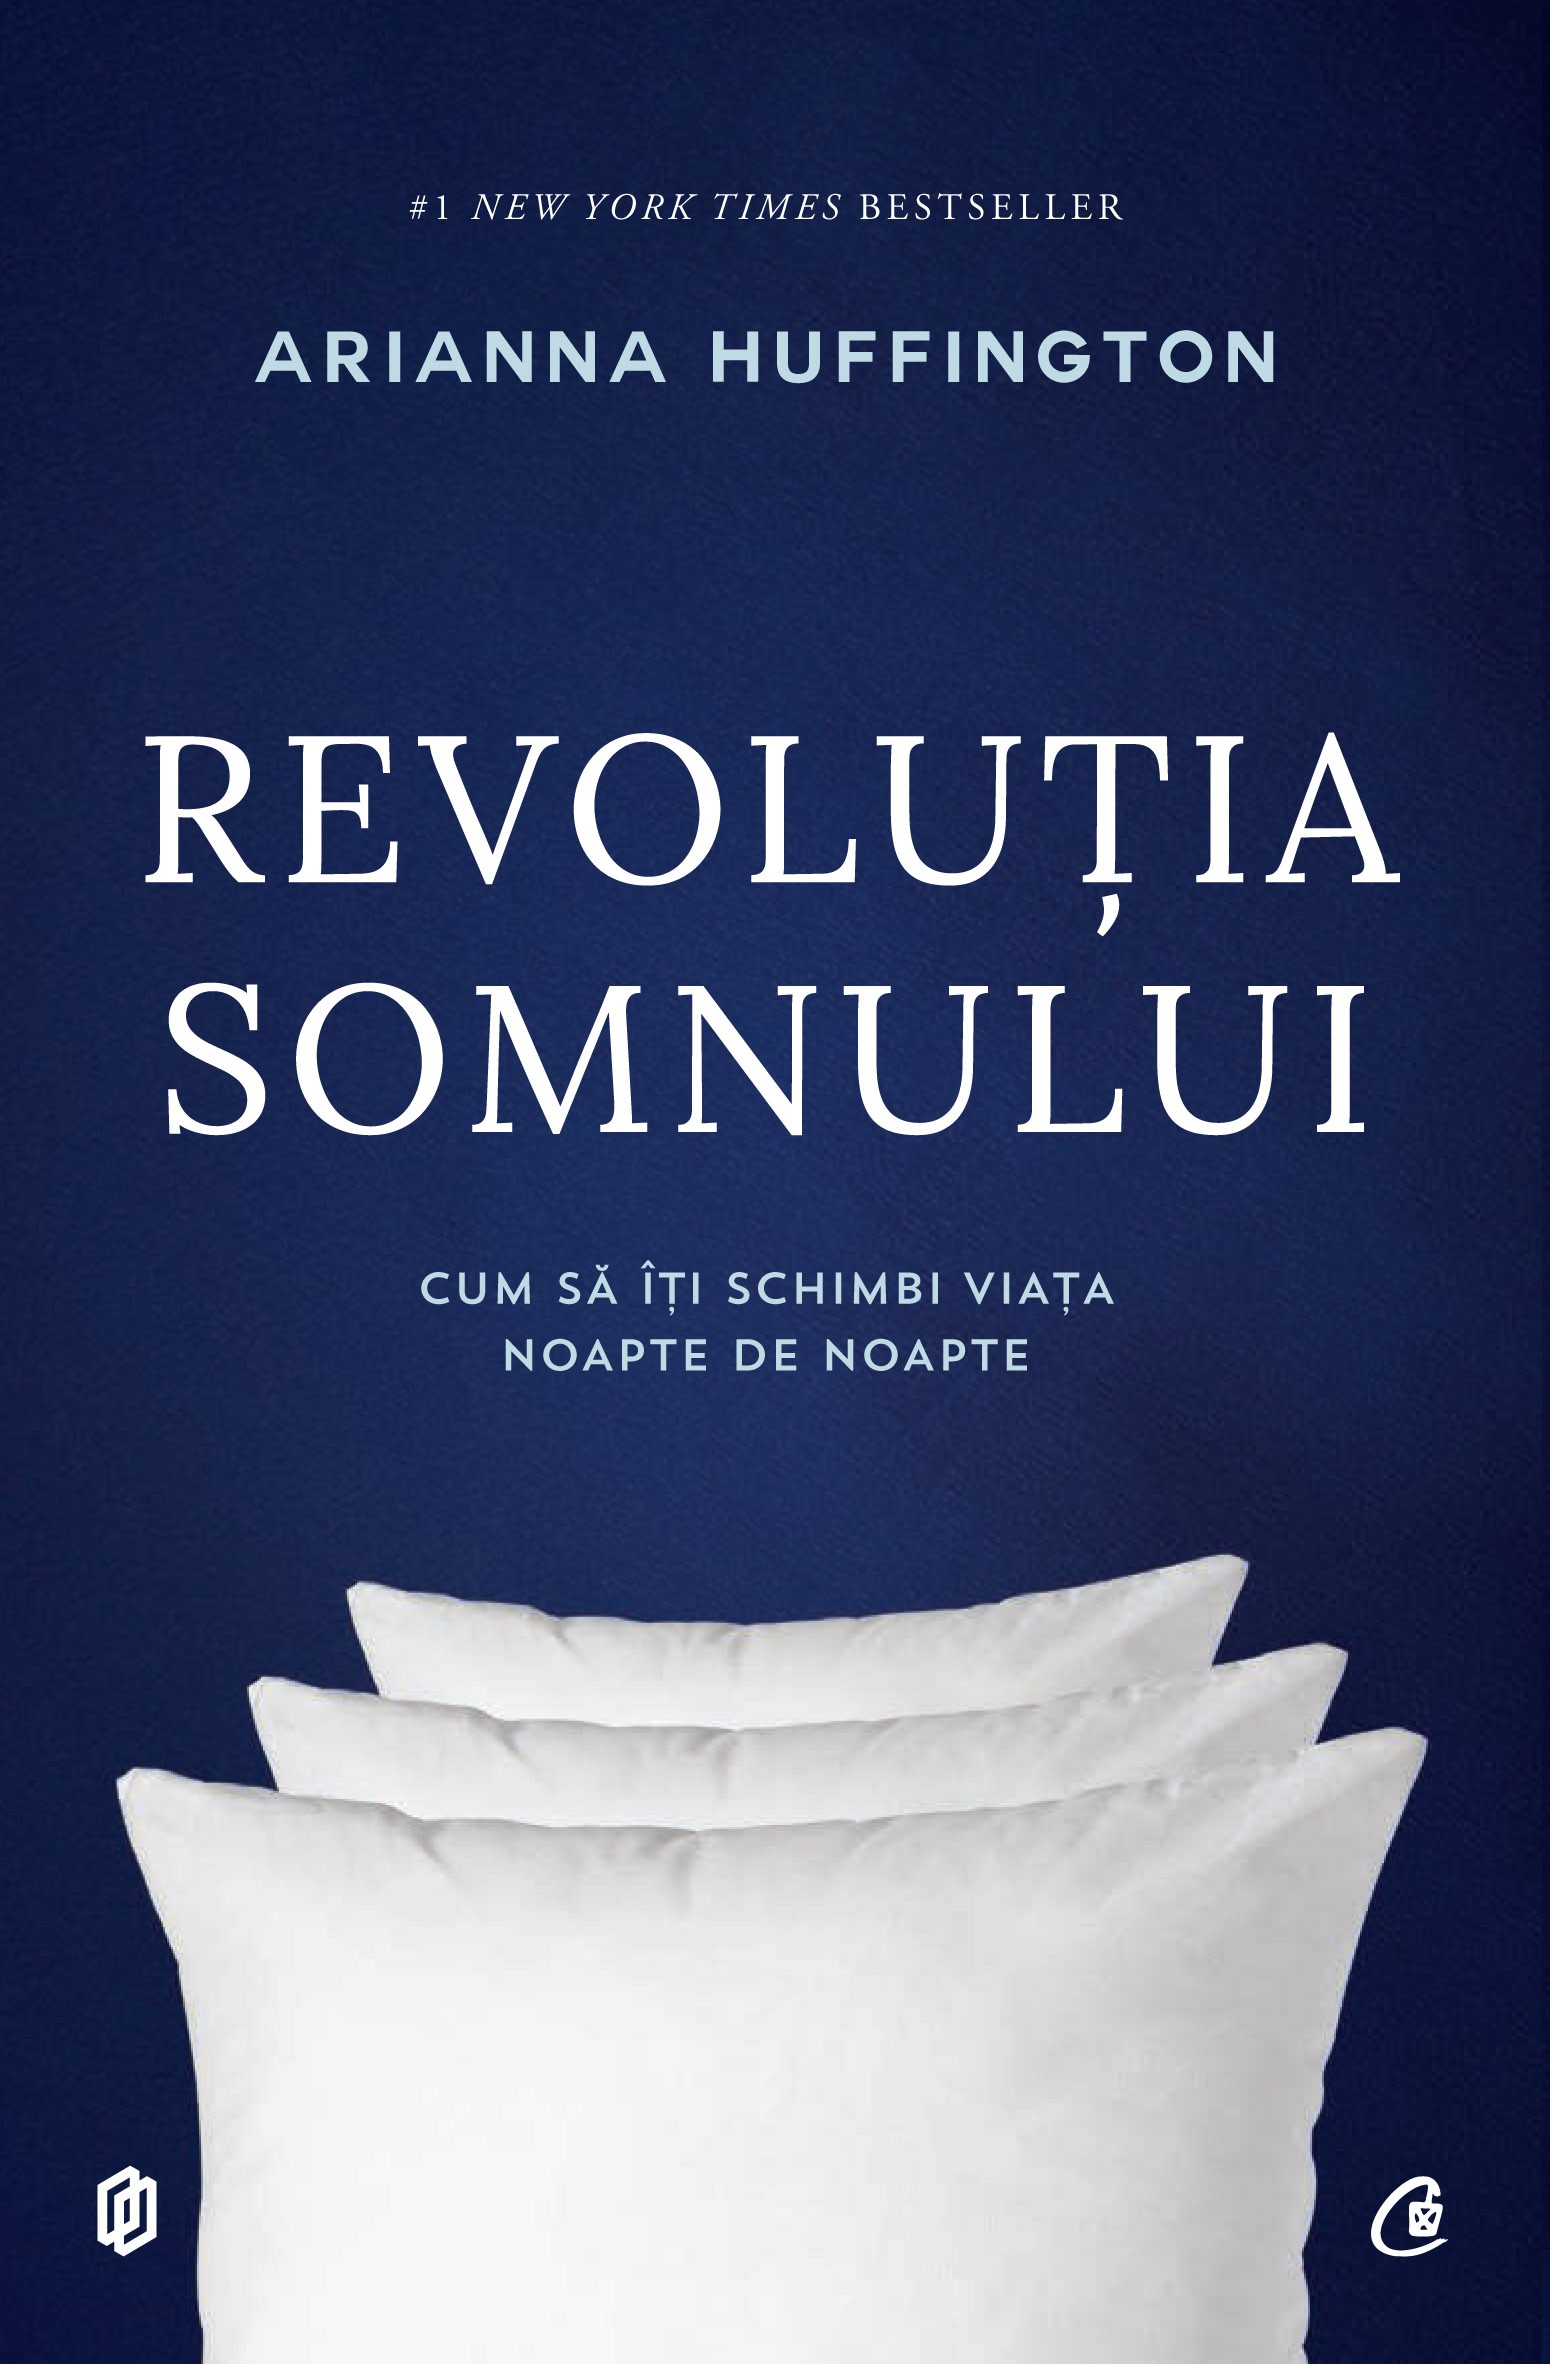 Revolutia somnului | Arianna Huffington carturesti.ro poza bestsellers.ro